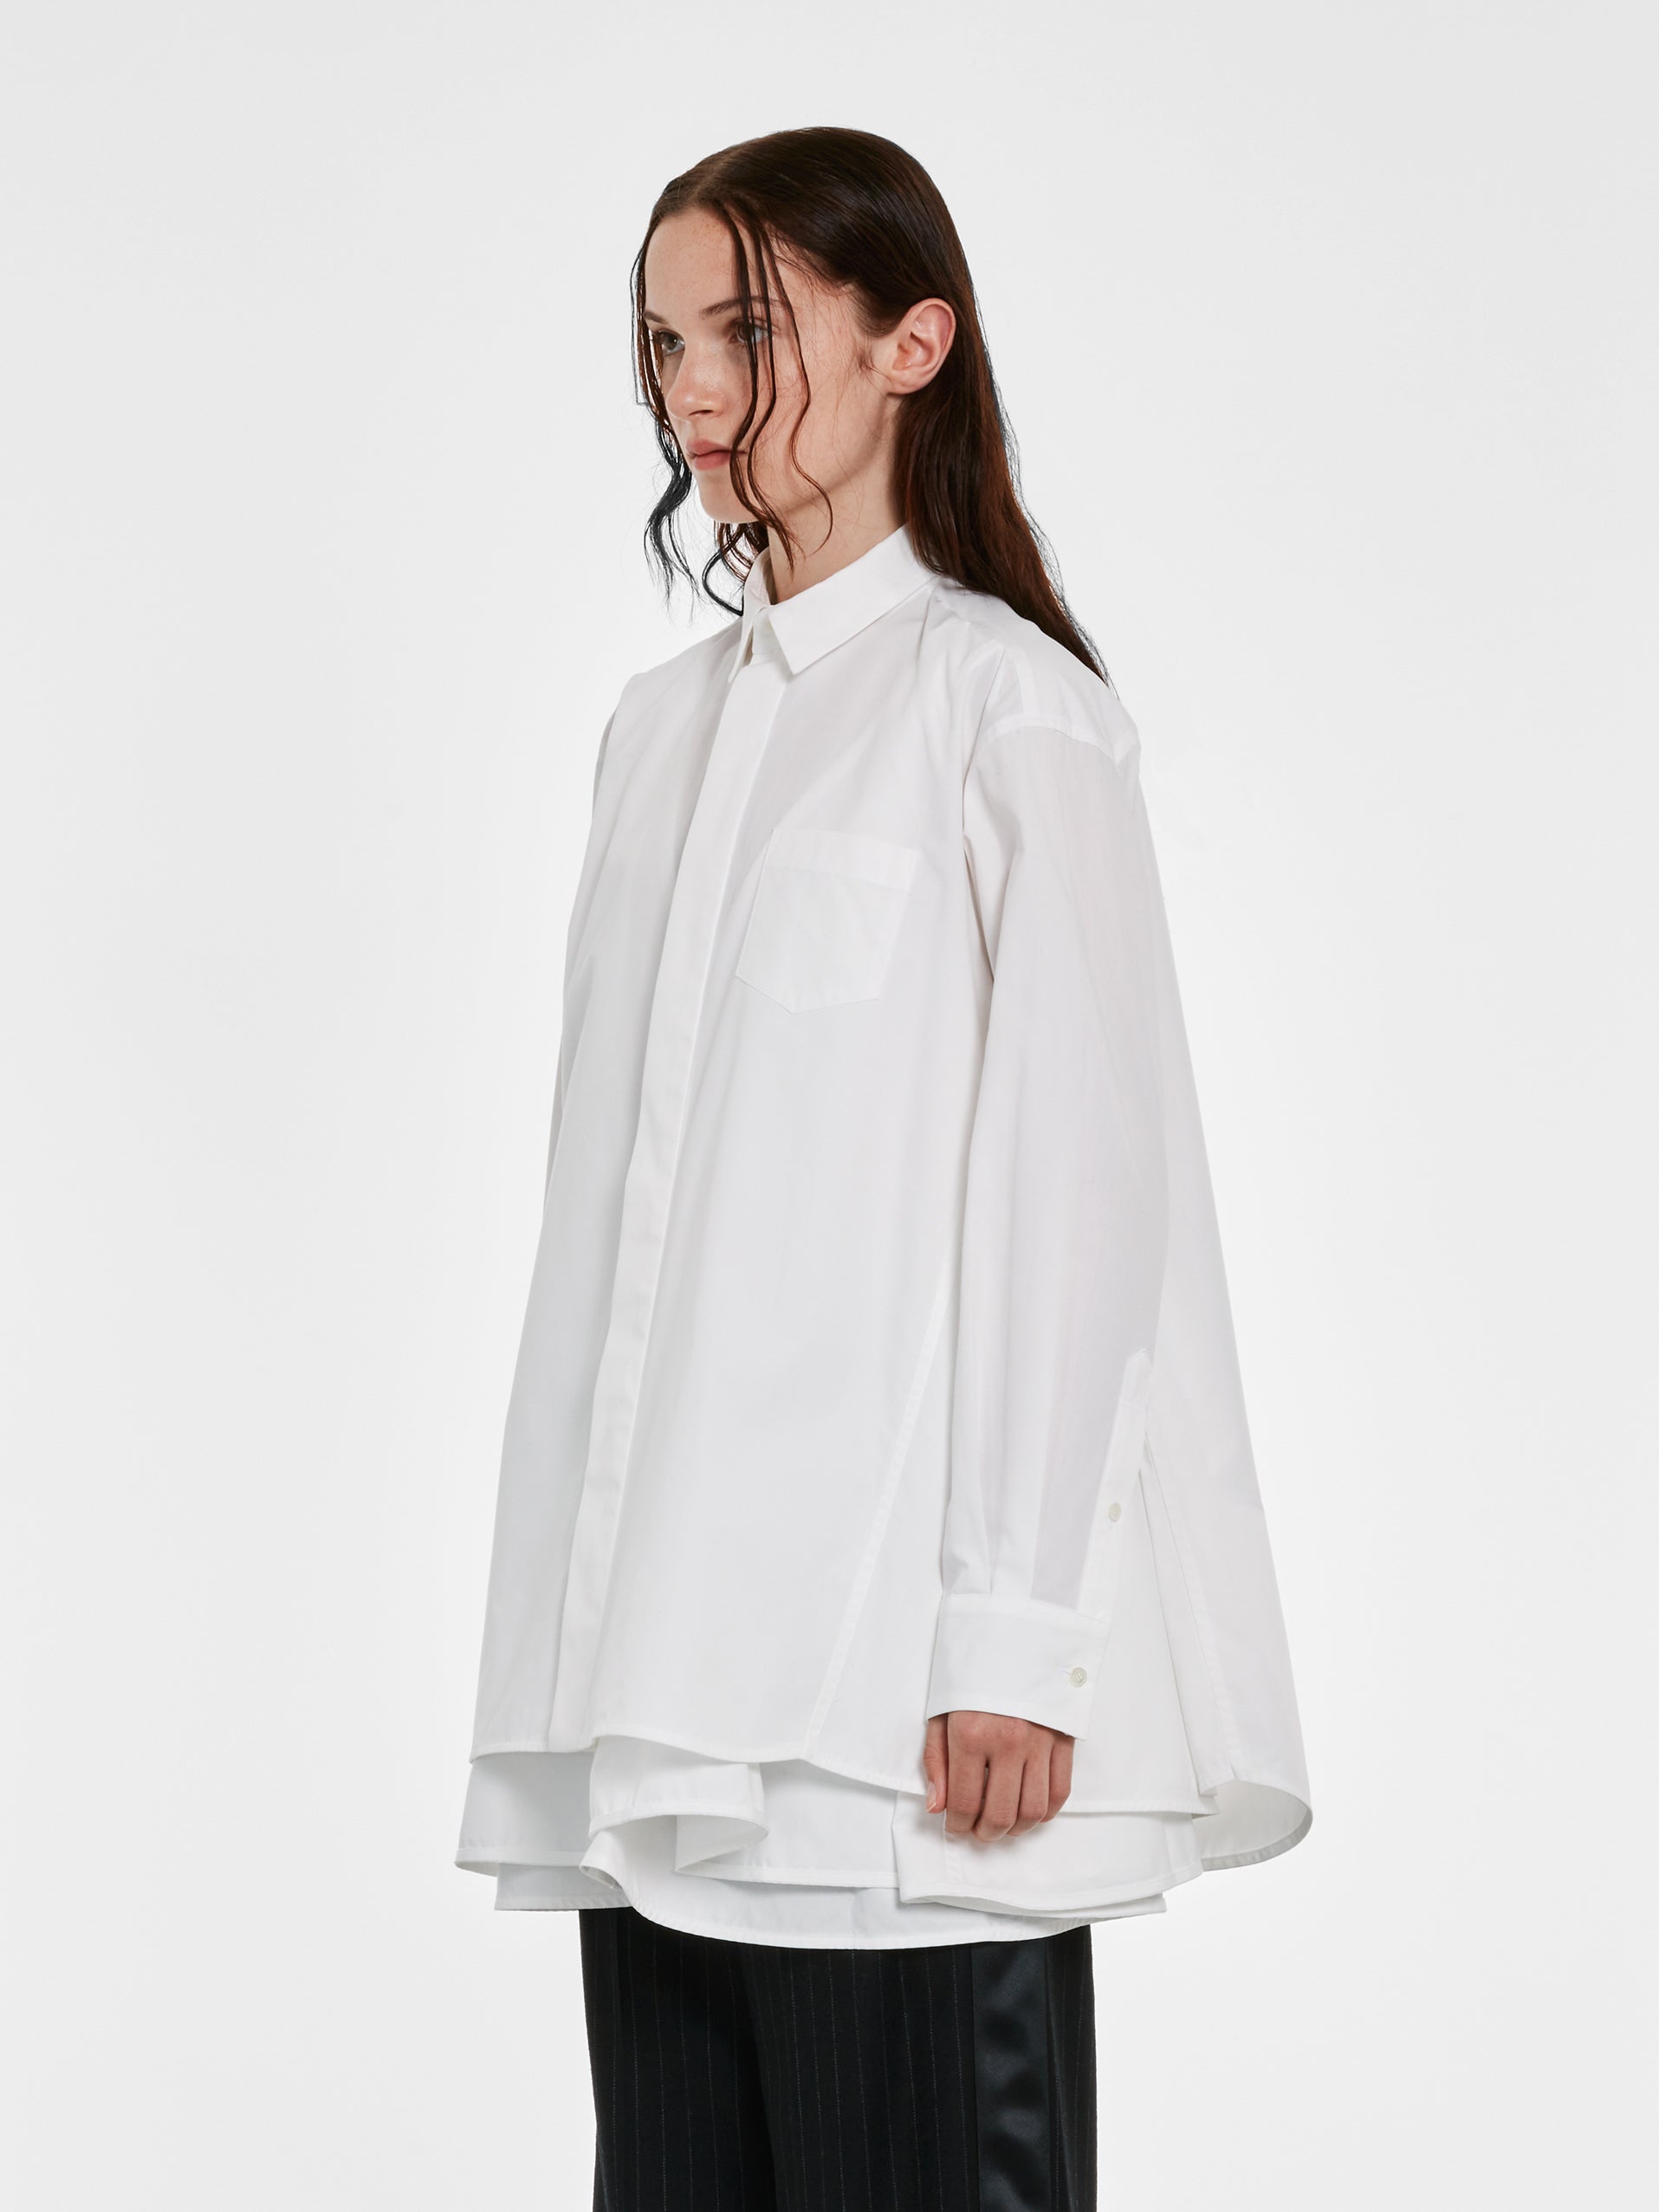 sacai - Women’s Cotton Poplin Dress - (White) view 3